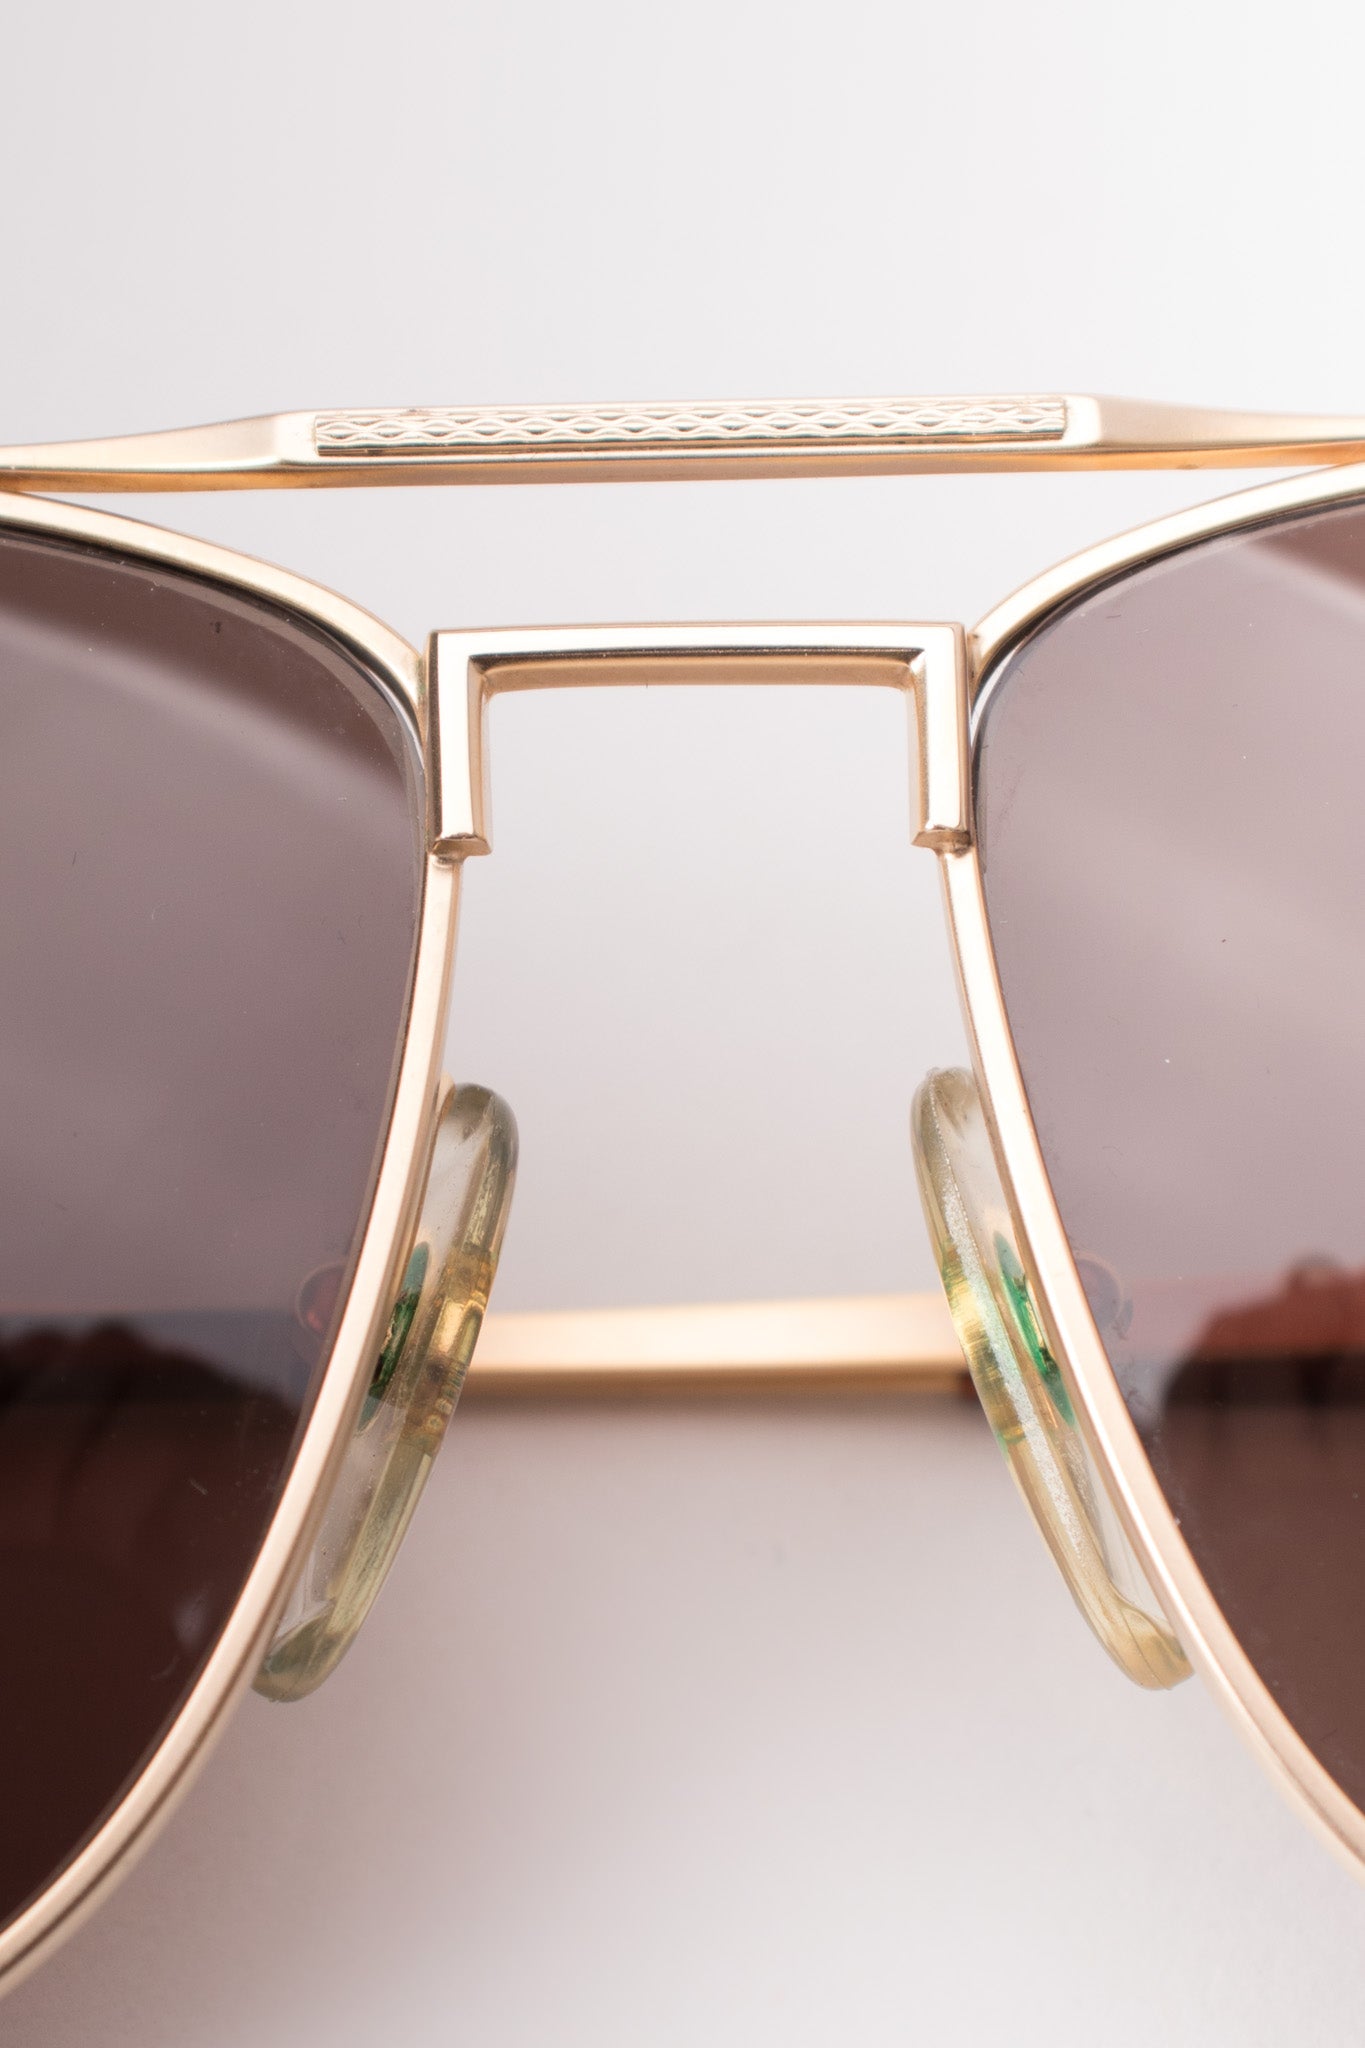 Dunhill Squared Matte Coppertone Pilot Sunglasses